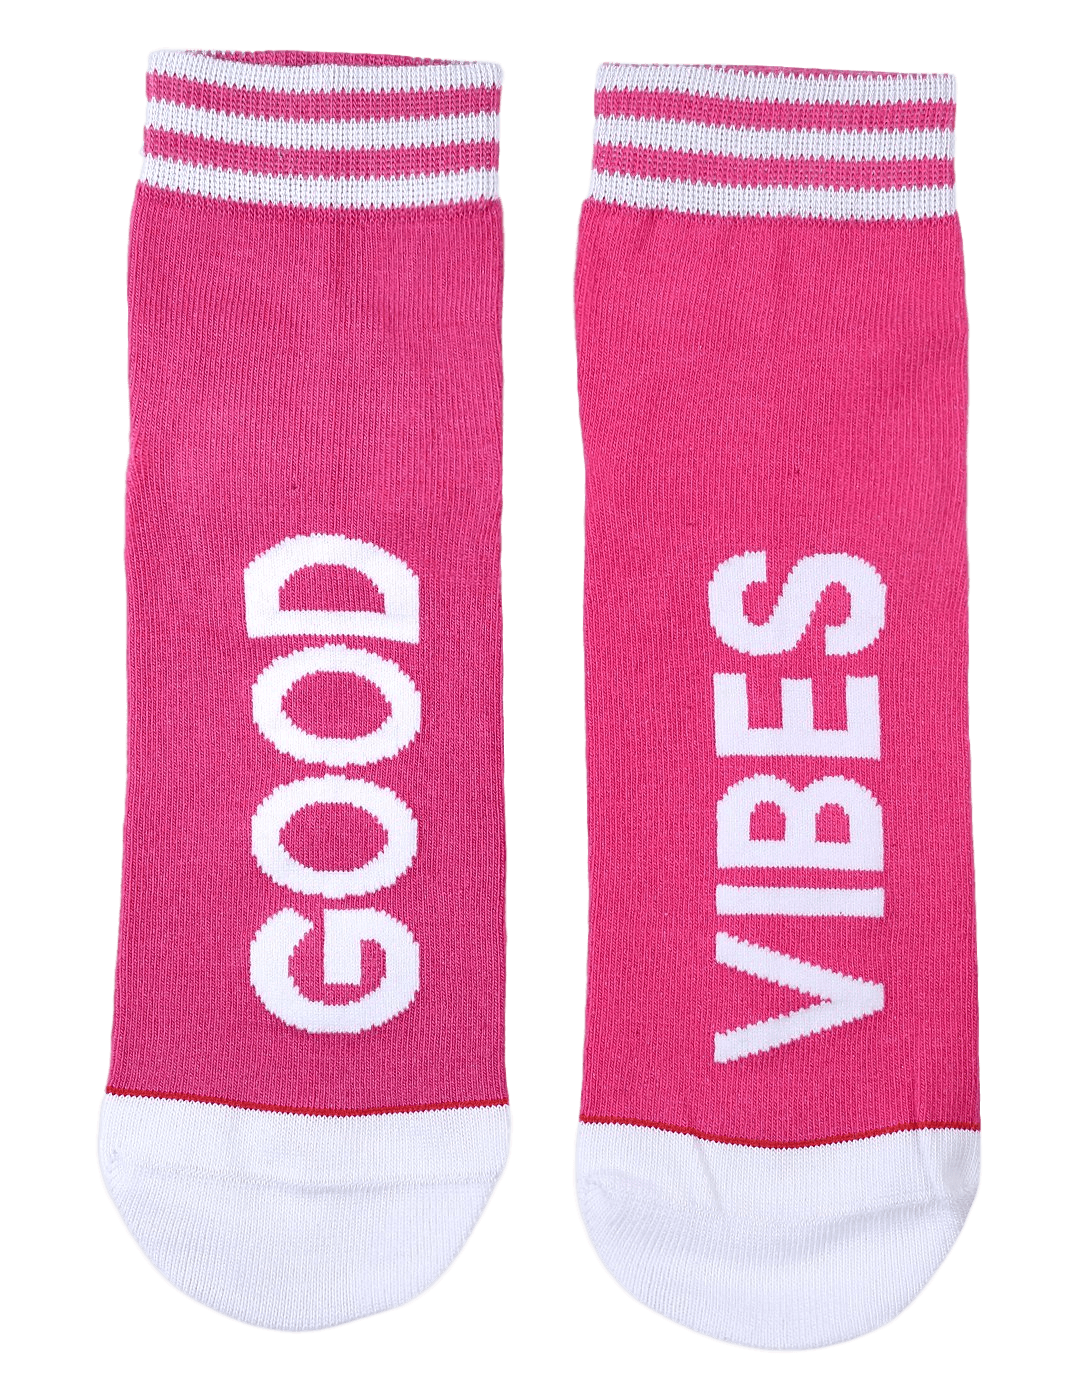 Good Vibes Socks